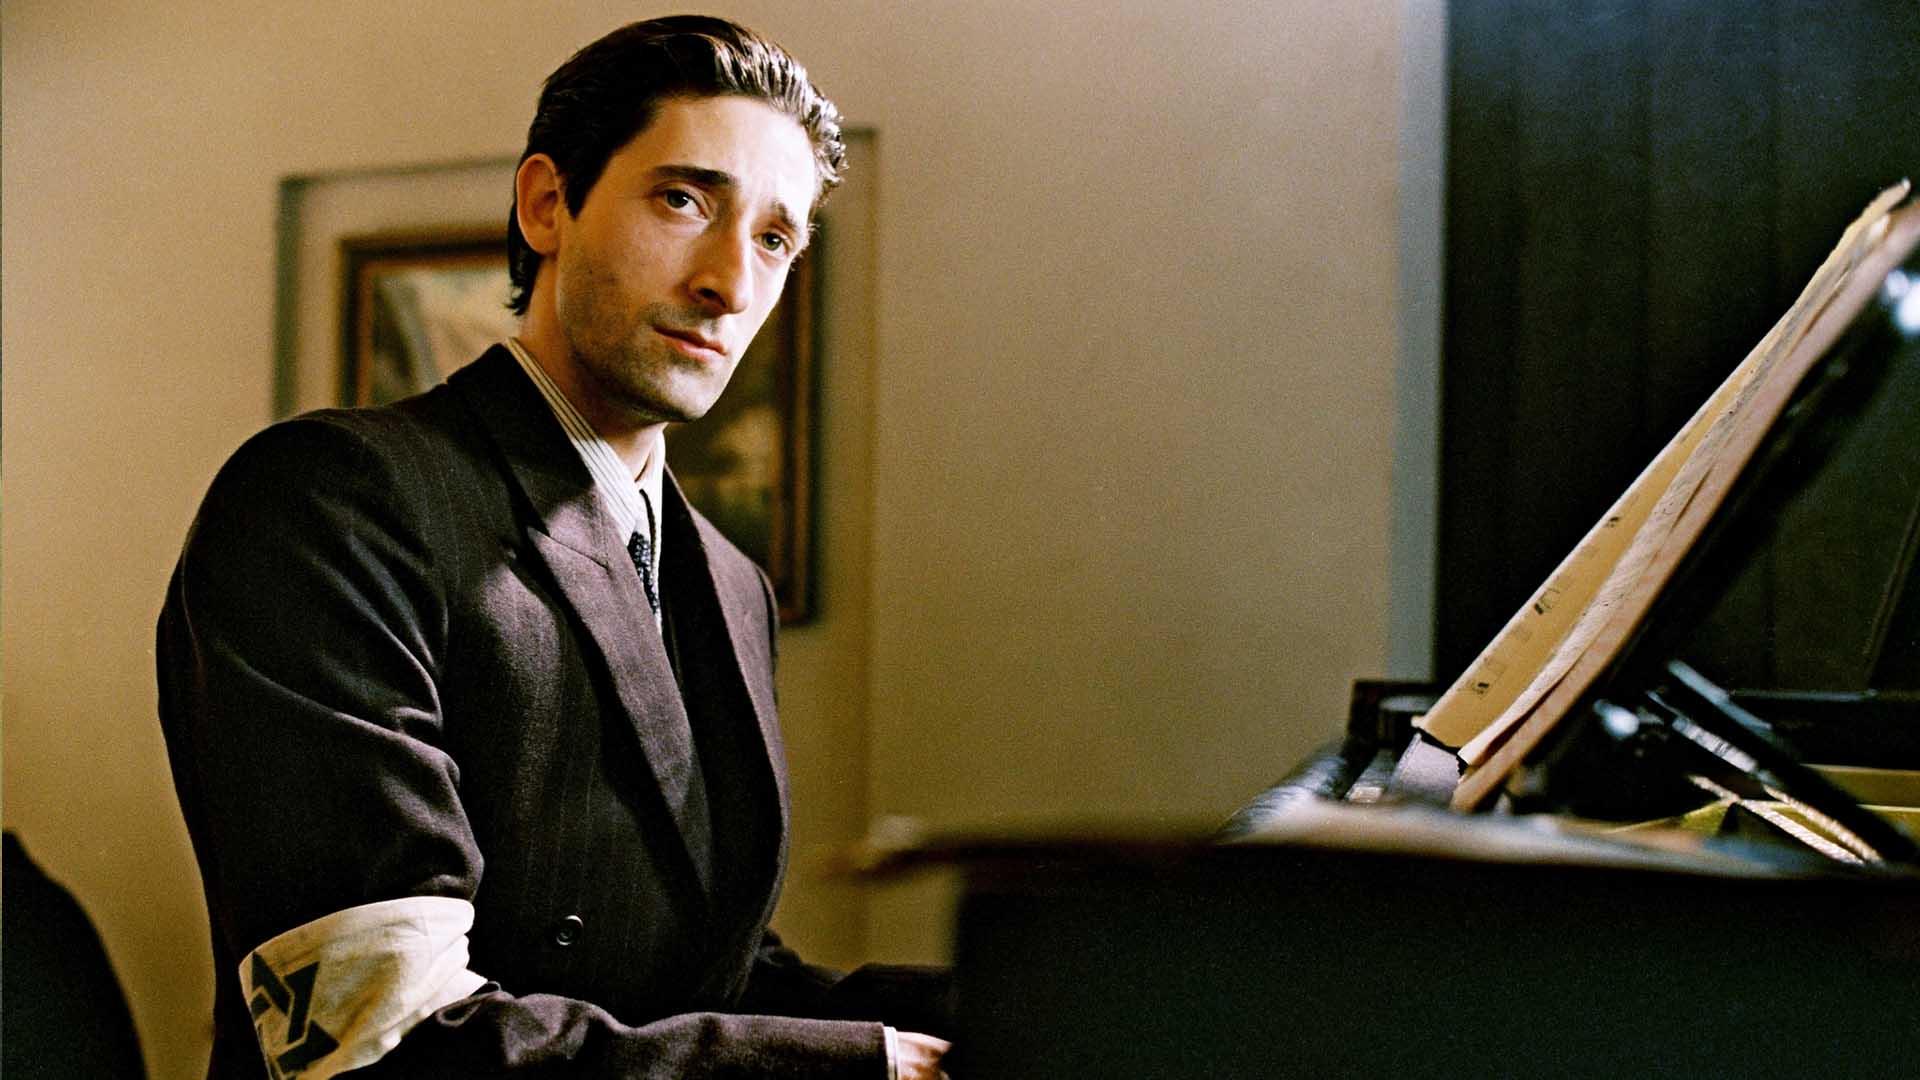 فیلم پیانیست (The Pianist) | پولانسکی شرح حال خود را گفته است